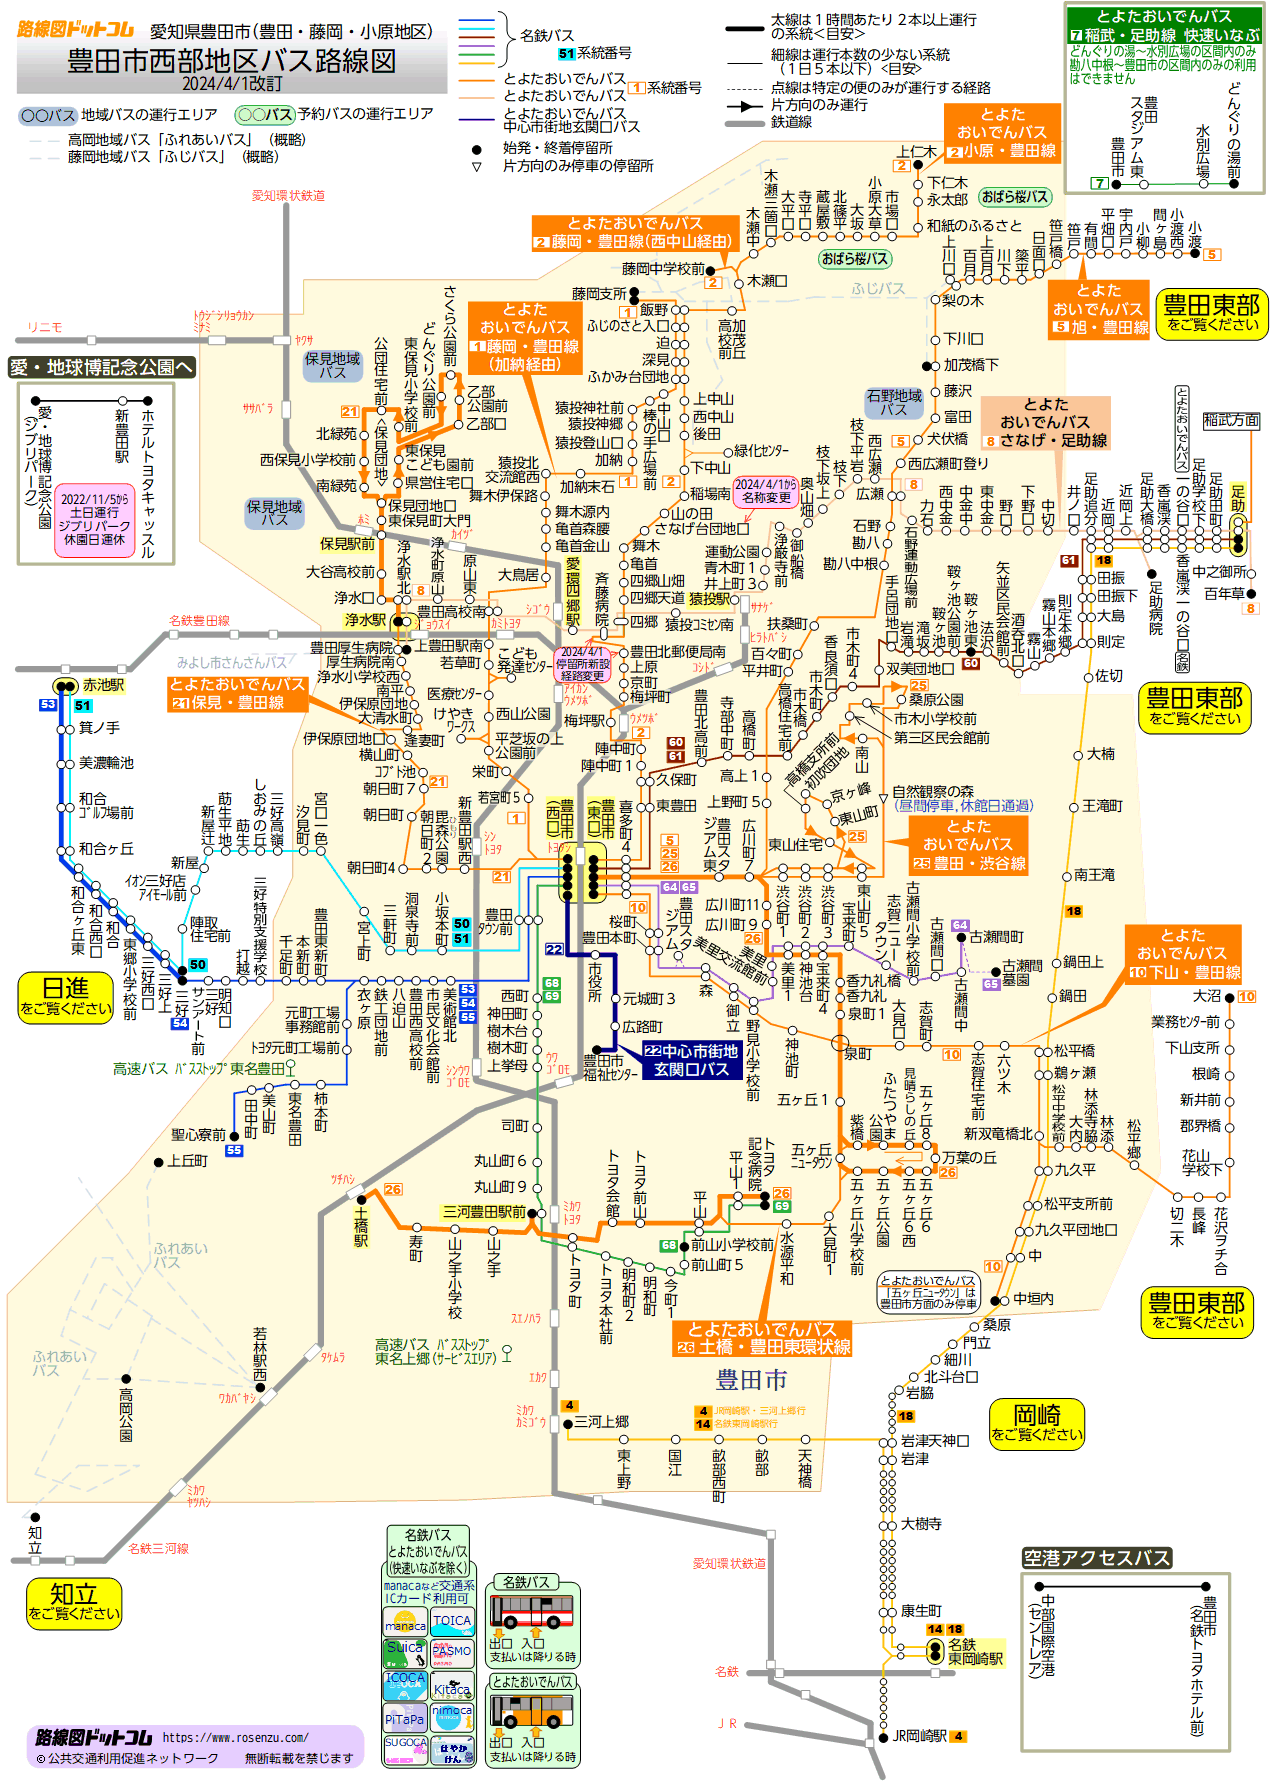 路線図ドットコム 愛知県 豊田市西部地区バス路線図